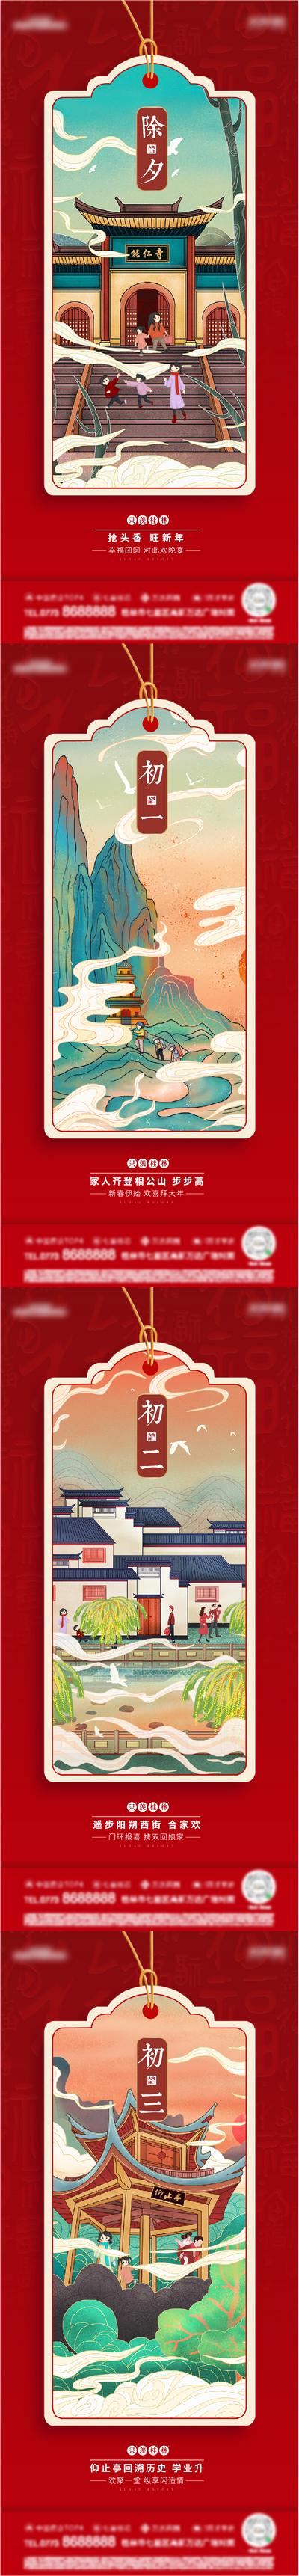 南门网 海报  房地产  系列  桂林   除夕    国潮   插画  春节   传统节日  书签